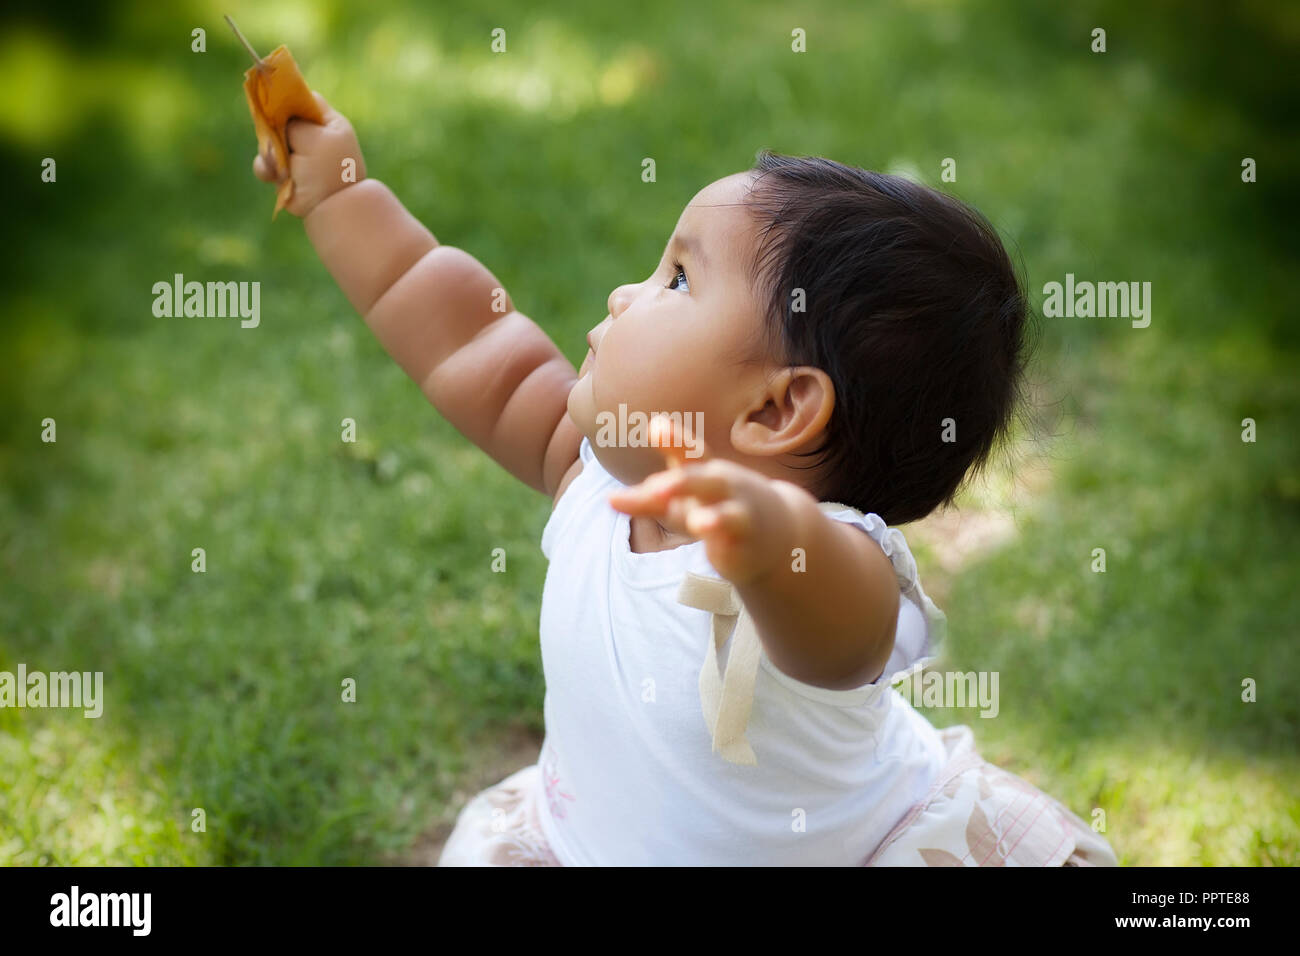 Carino chubby toddler alzando le braccia al cielo in un parco con prato verde che esprime il benessere e buona salute Foto Stock